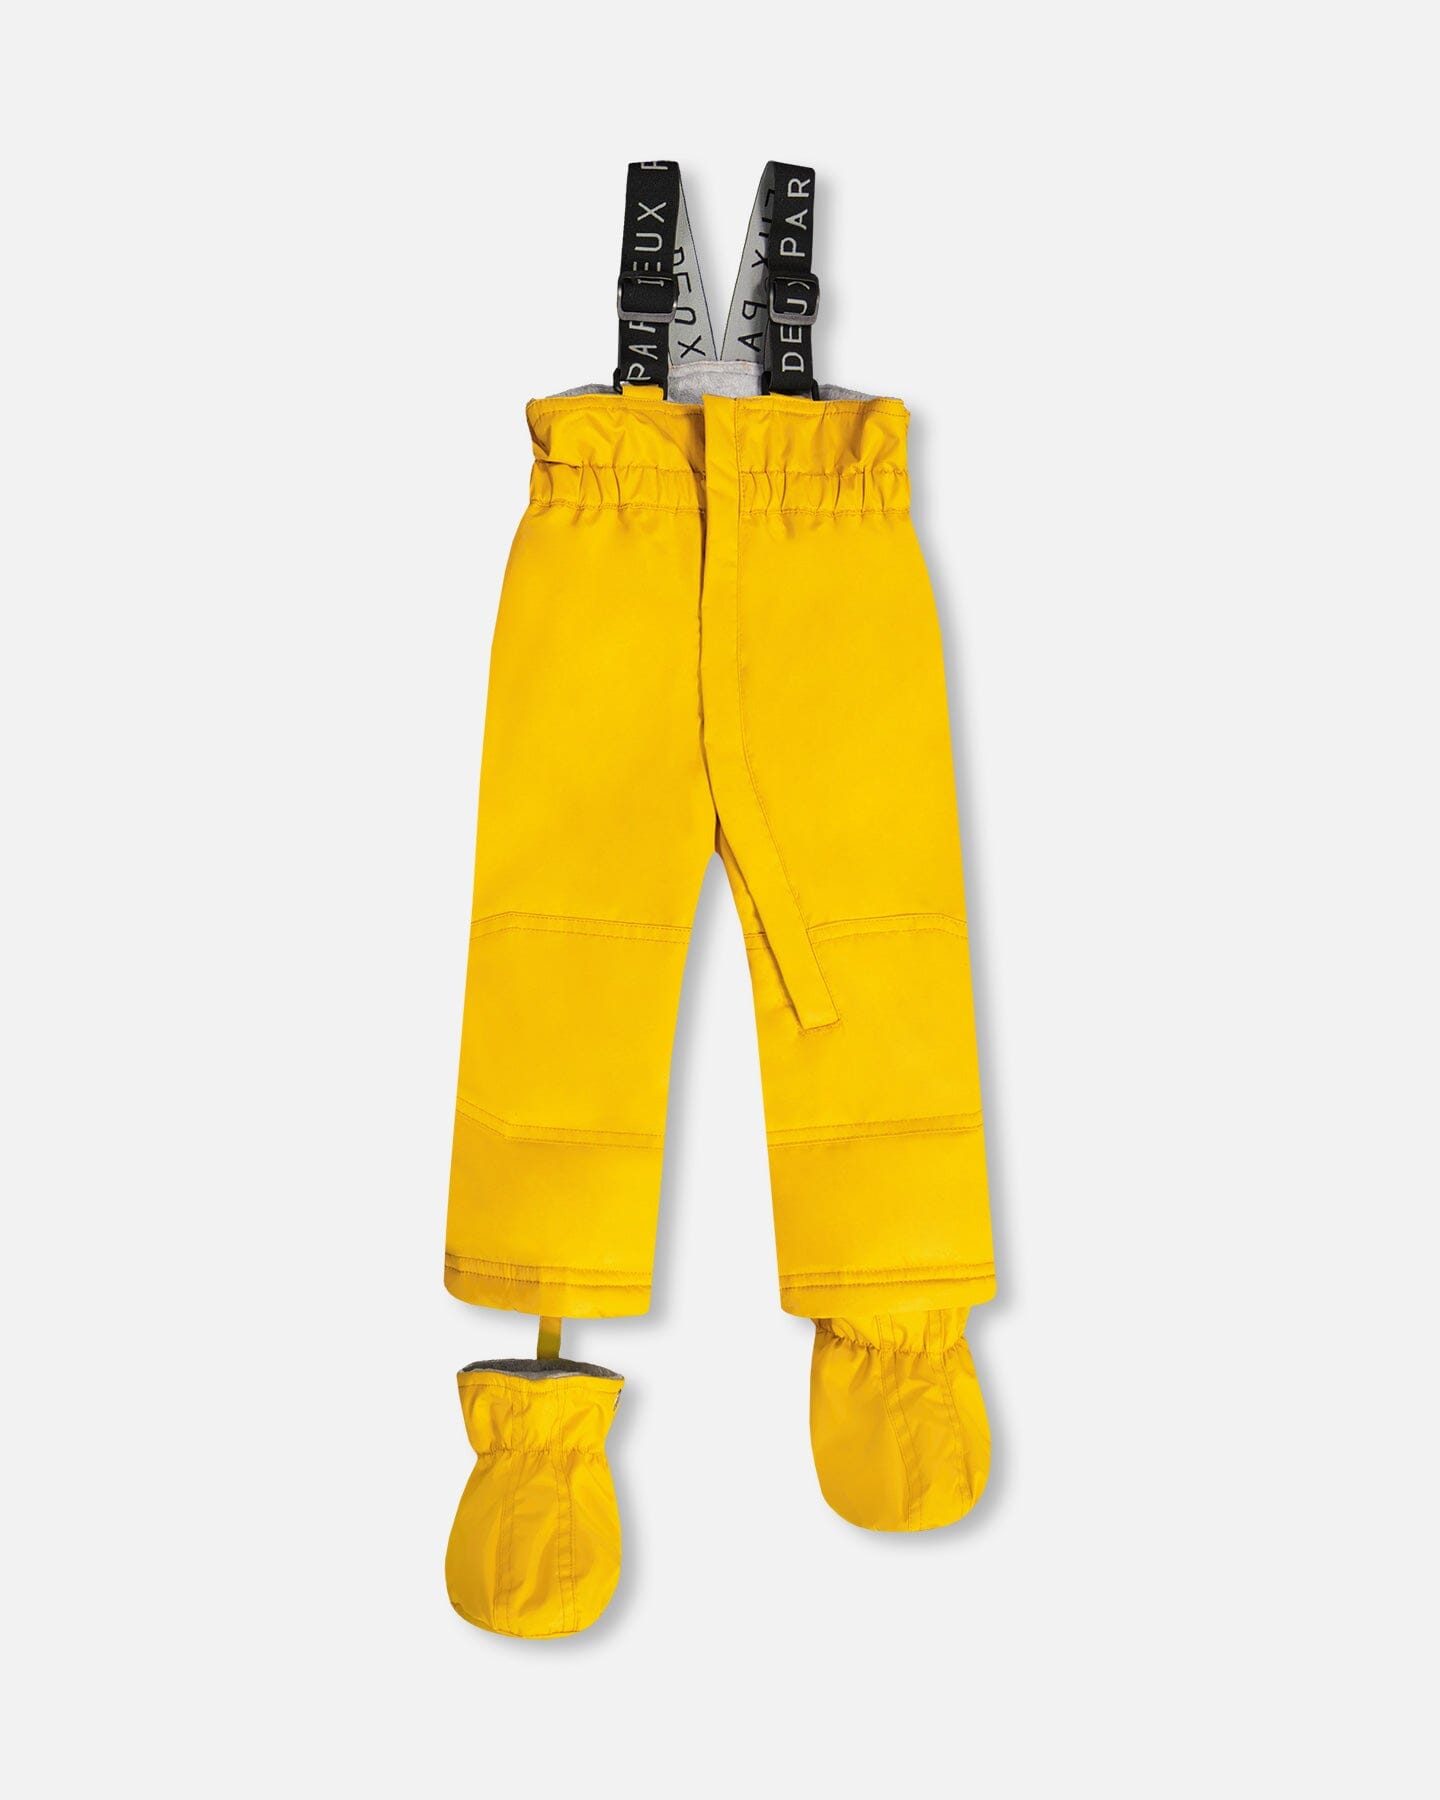 Two Piece Baby Snowsuit Golden Harvest With Dino Print Snowsuits Deux par Deux 